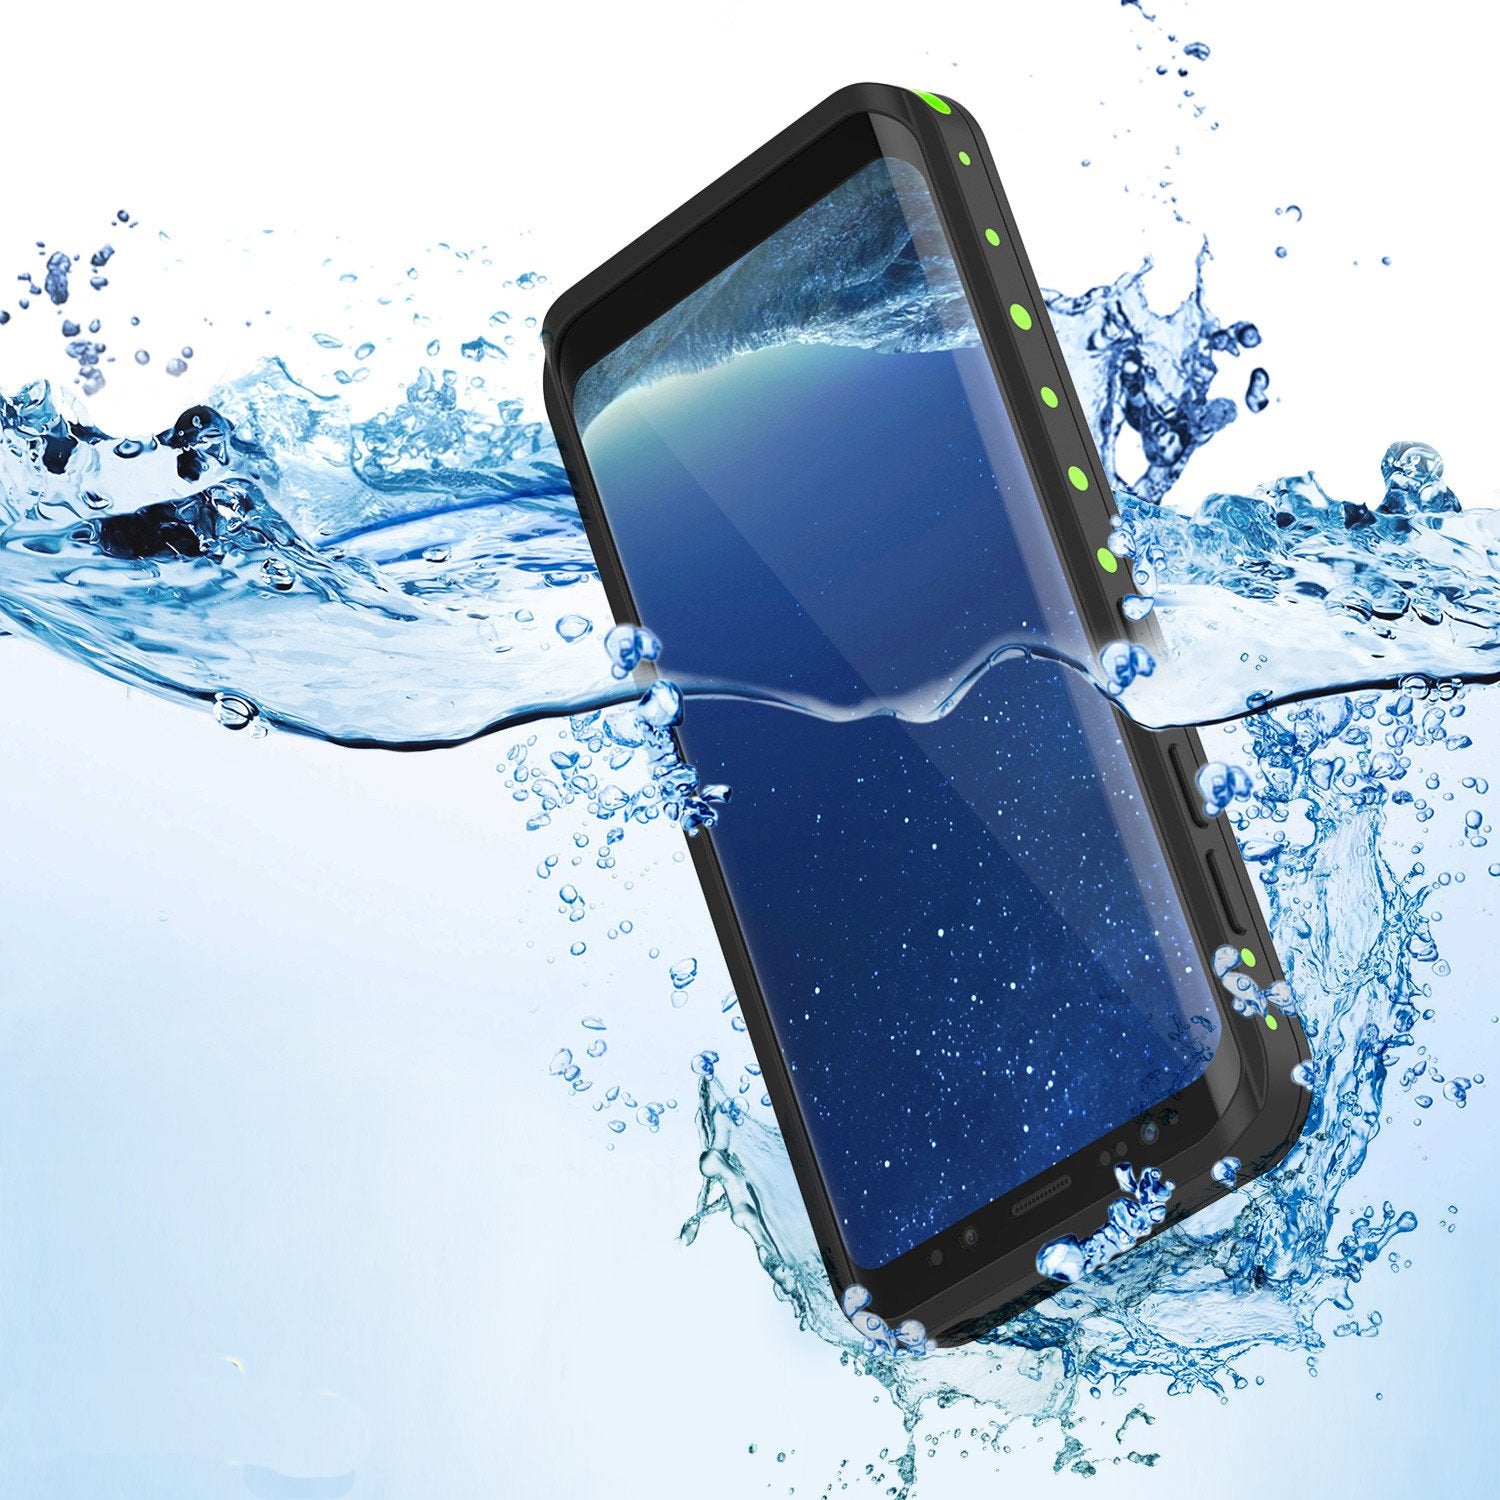 Galaxy S8 Plus Waterproof Case PunkCase StudStar Light Green